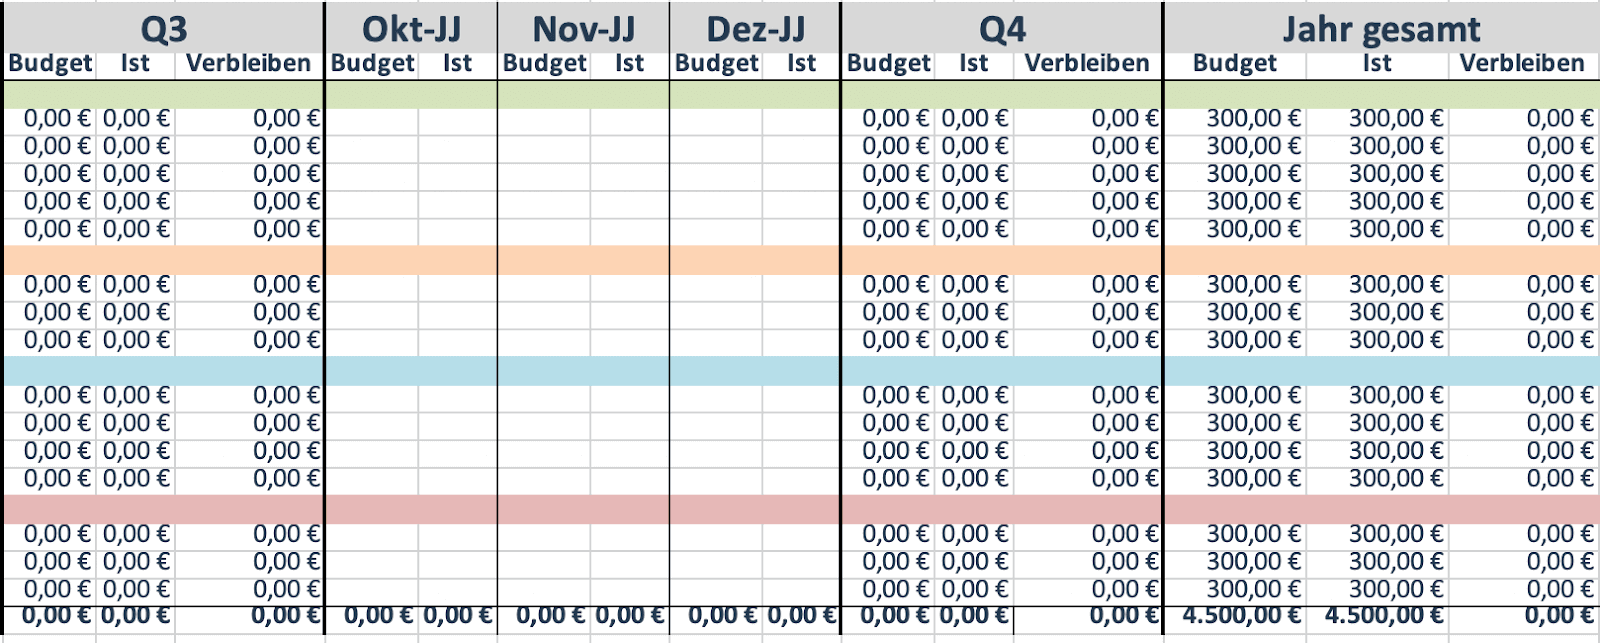 Marketing-Budget-Vorlage nach Quartal in Form einer Excel-Tabelle